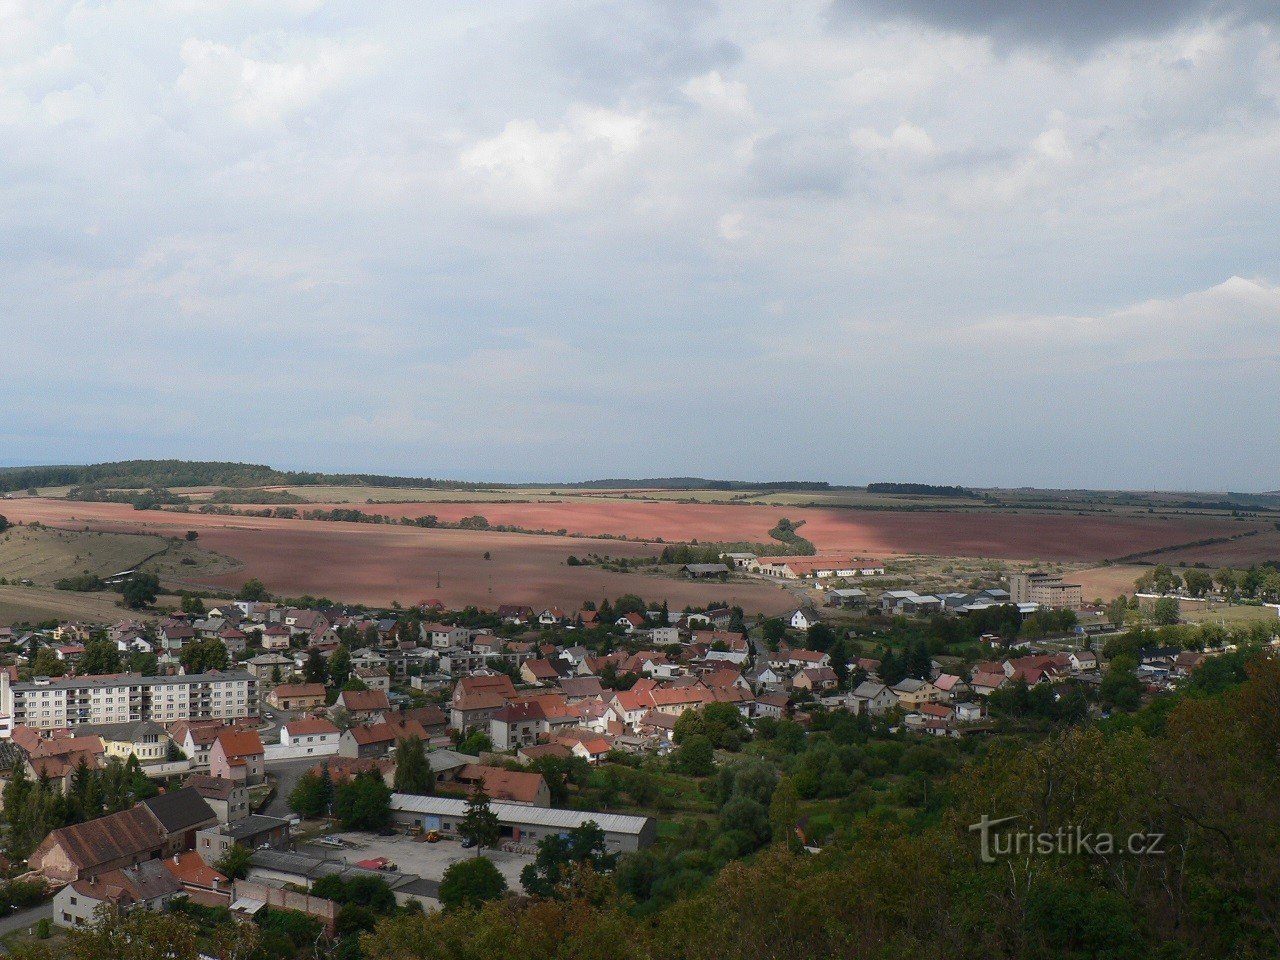 Kostelní vrch, widok z wieży widokowej na zachód